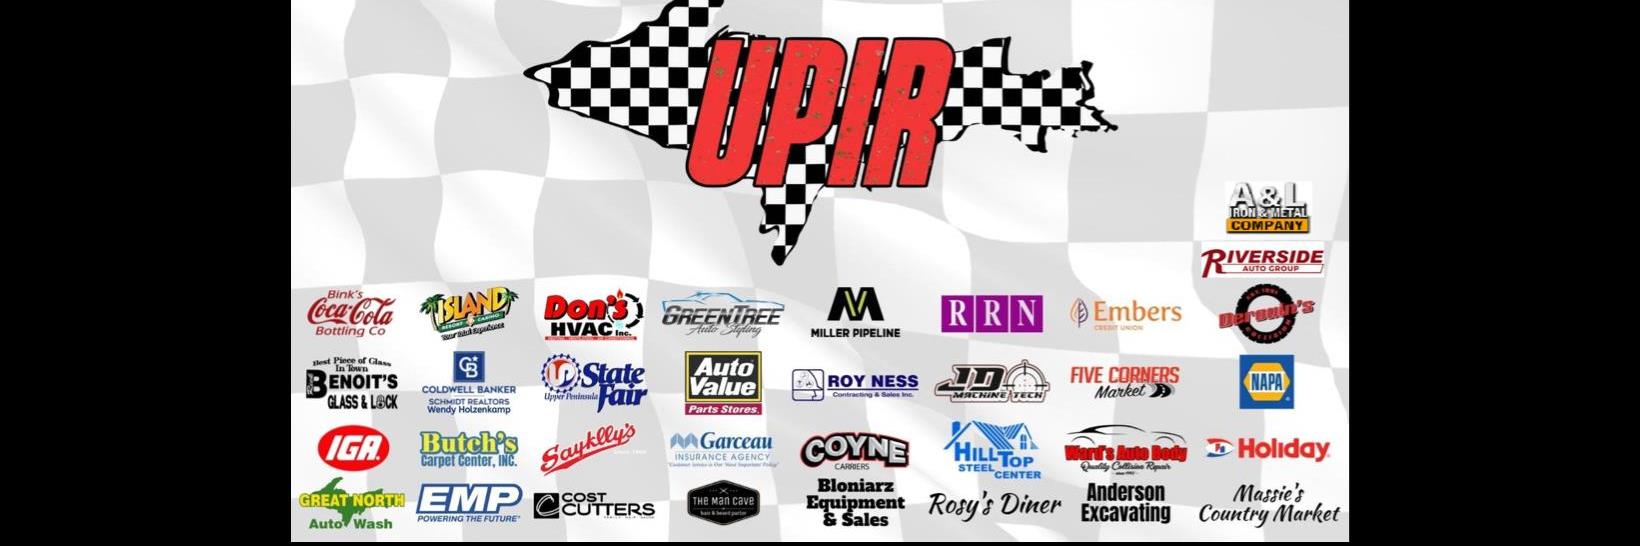 7/30/2022 - Upper Peninsula International Raceway